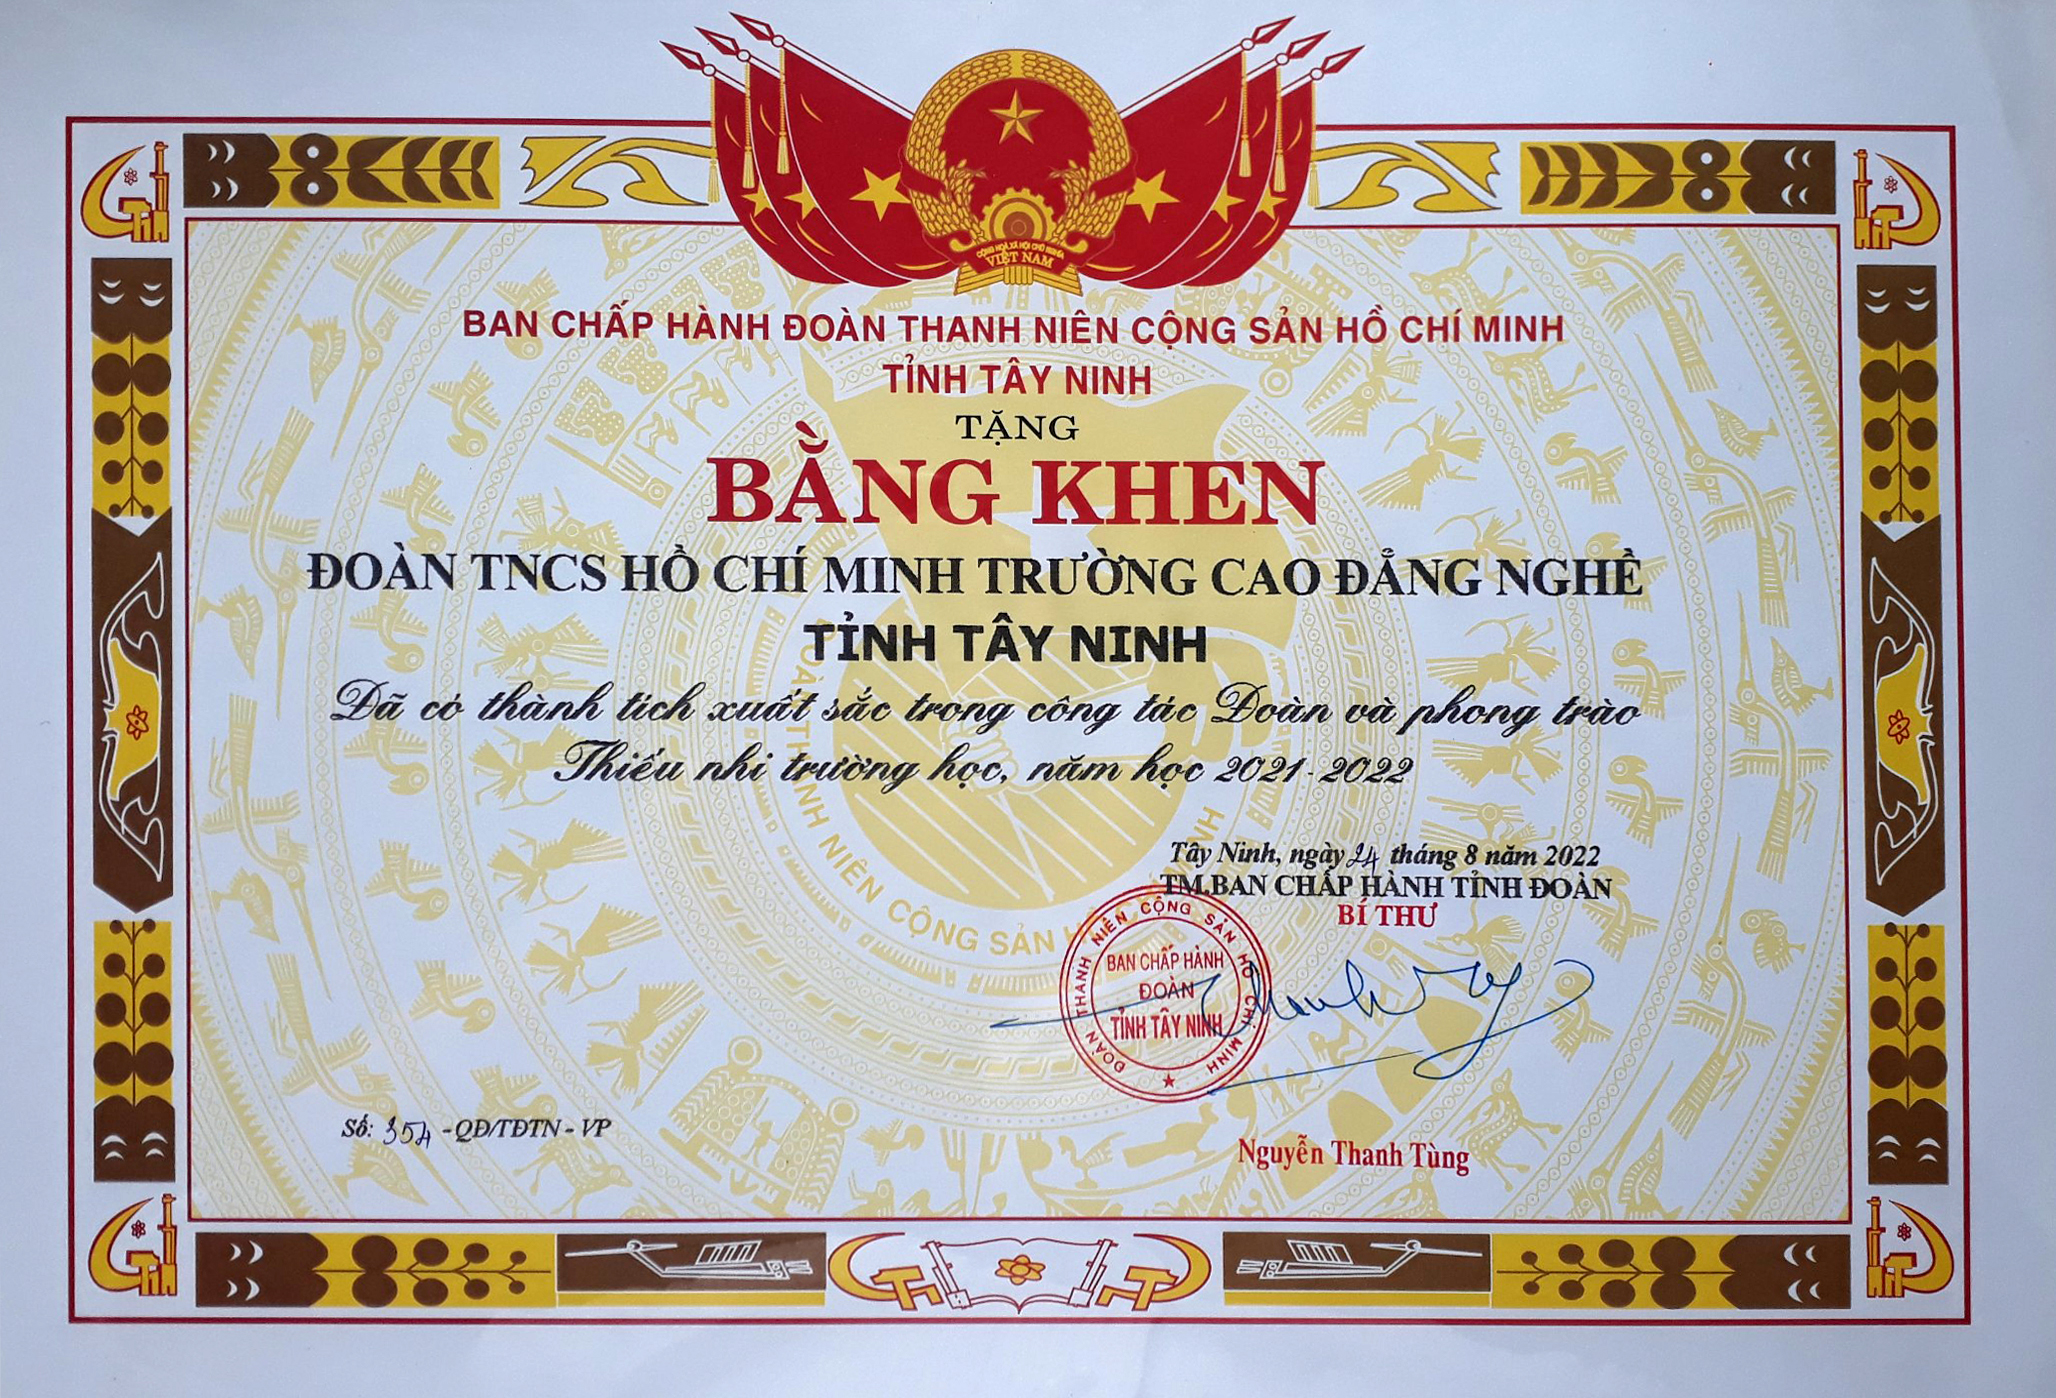 Đoàn TNCS HCM trường Cao đẳng nghề Tây Ninh nhận Bằng khen của BCH ĐTNCSHCM đã có thành tích xuất sắc trong công tác Đoàn và phong trào Thiếu nhi trường học năm học 2021-2022